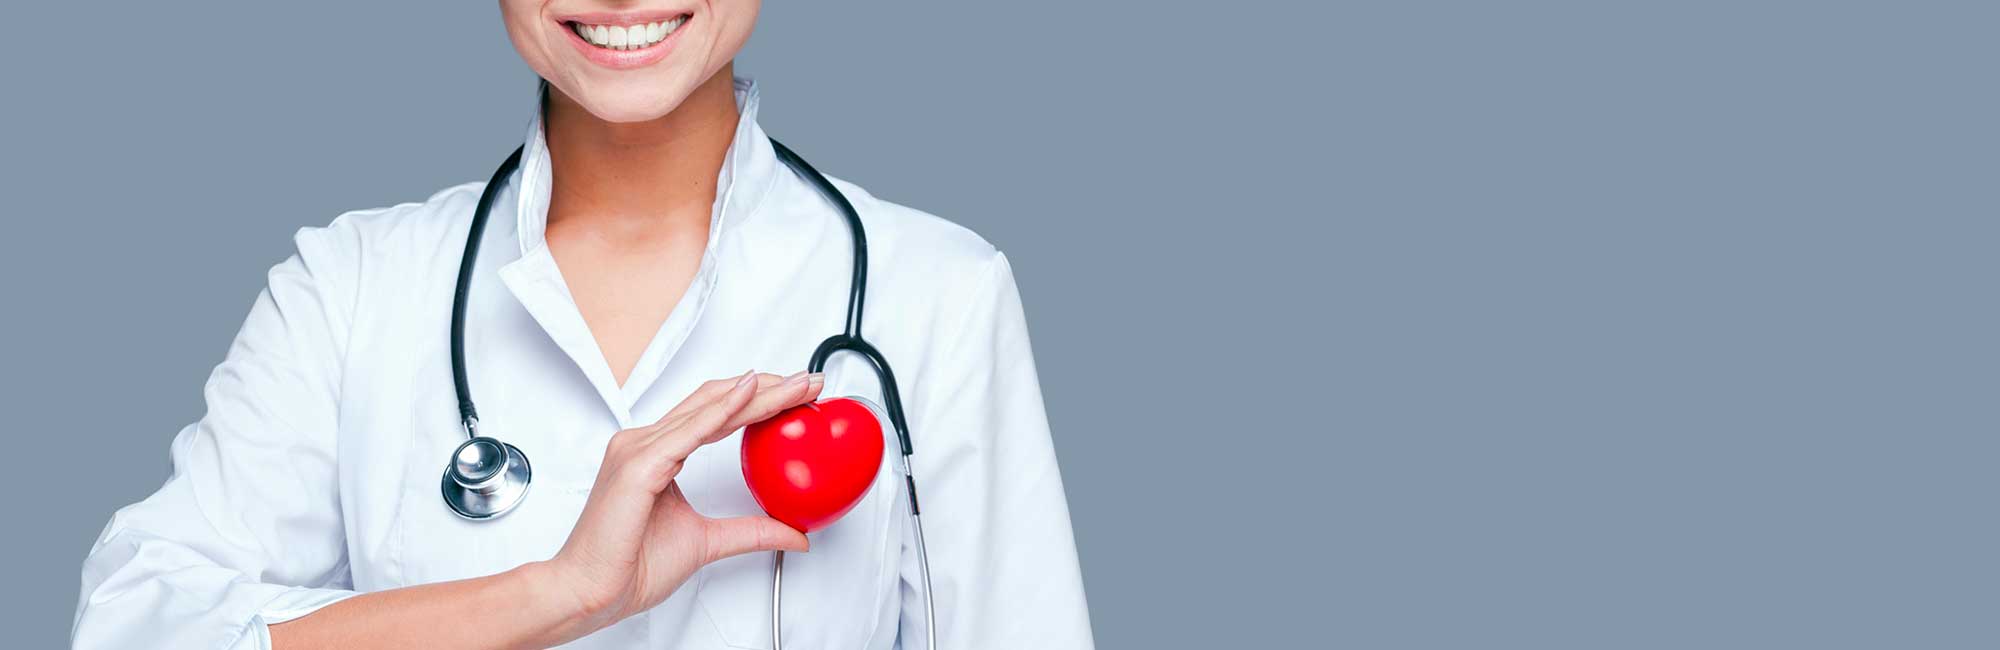 cardiocenter-centro-cardiologia-angiologia-convenzionato-napoli